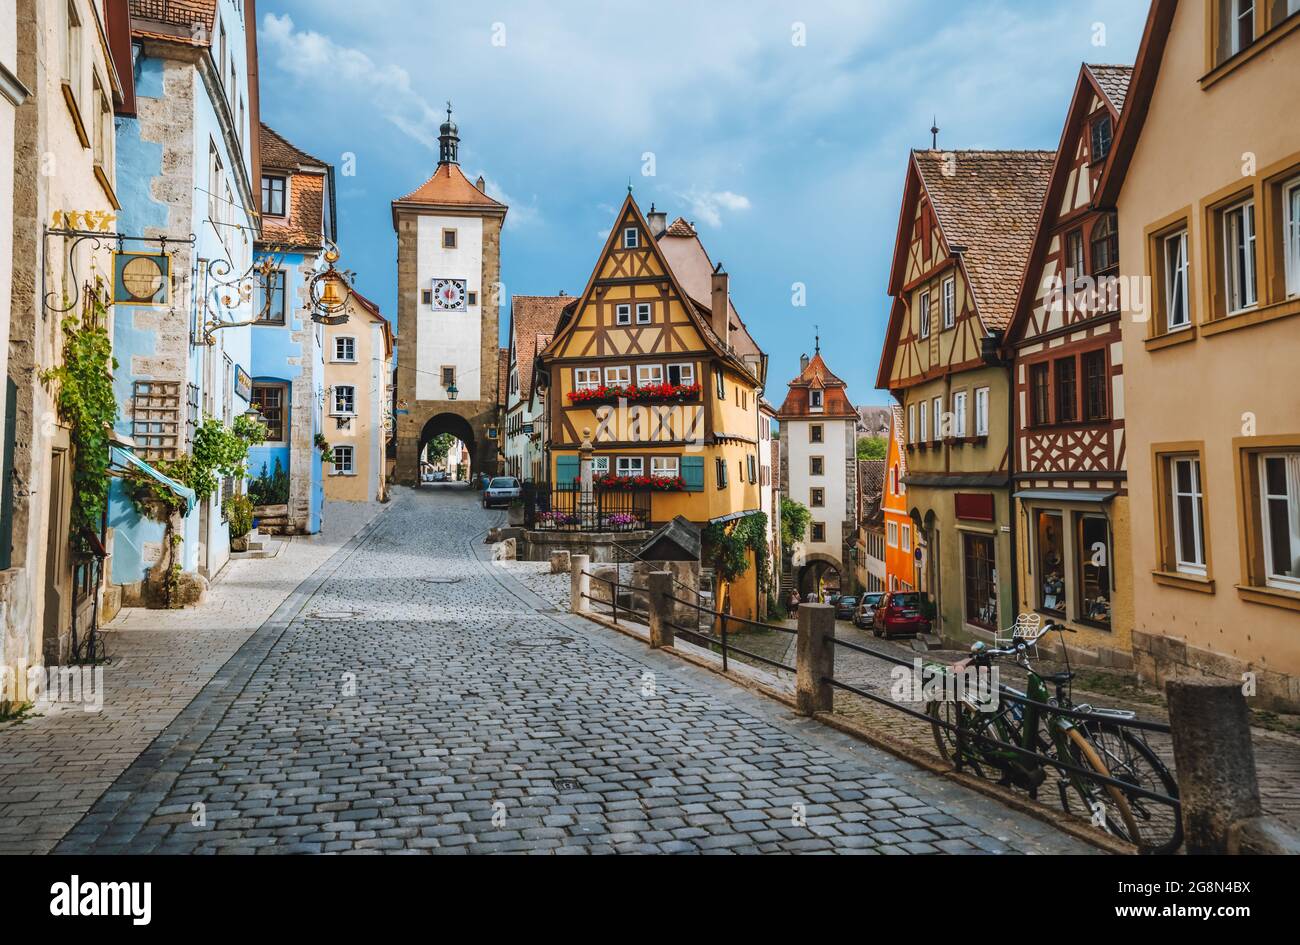 Rothenburg ob der Tauber, ville médiévale pittoresque en Allemagne, célèbre site du patrimoine culturel mondial de l'UNESCO, destination de voyage populaire Banque D'Images